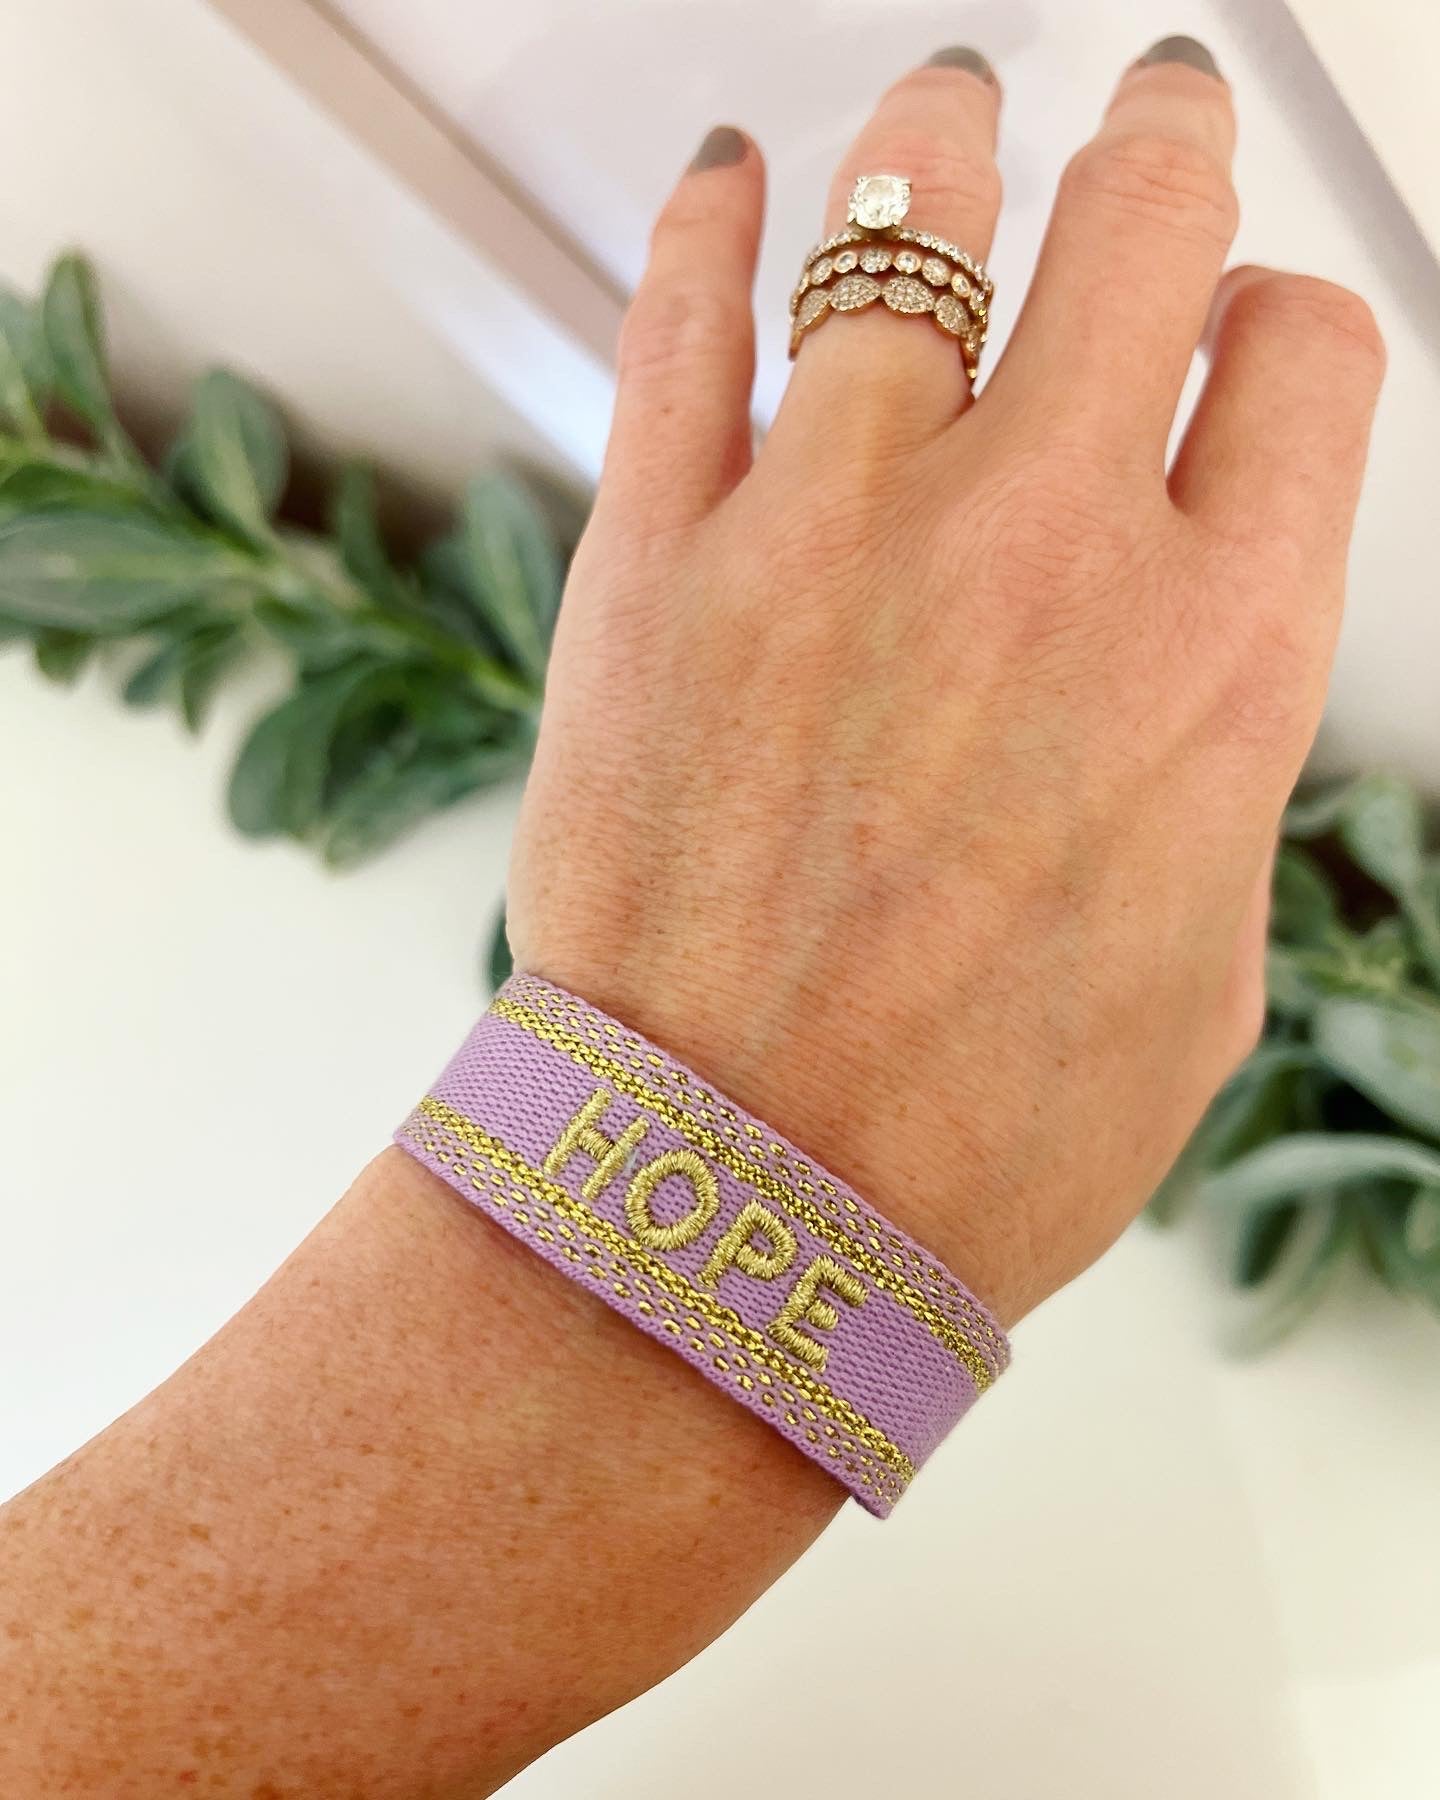 Hope on the Horizon Bracelet- SWFL fundraiser